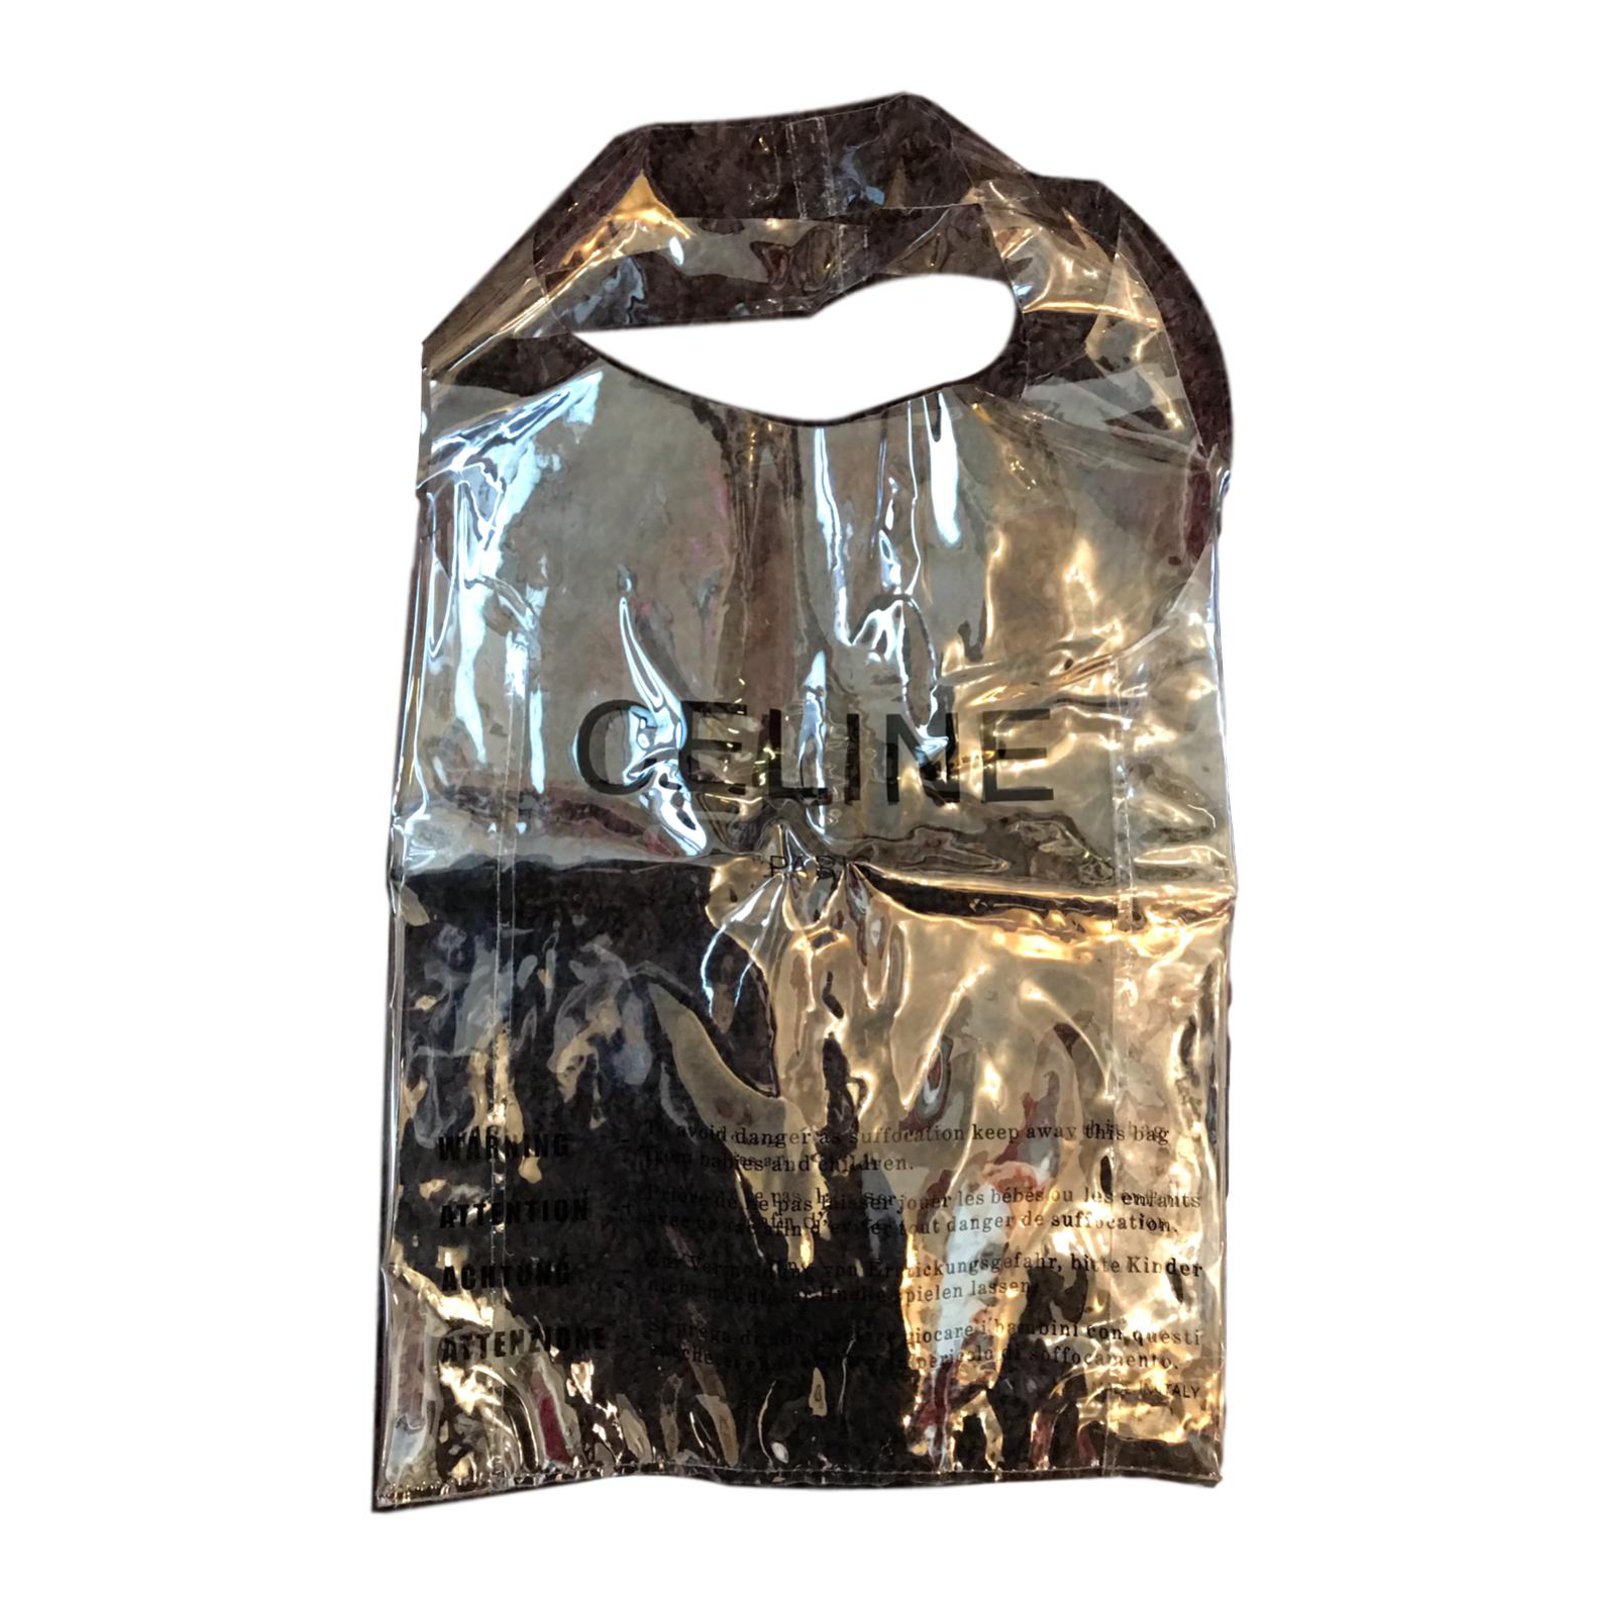 Image result for celine plastic bag